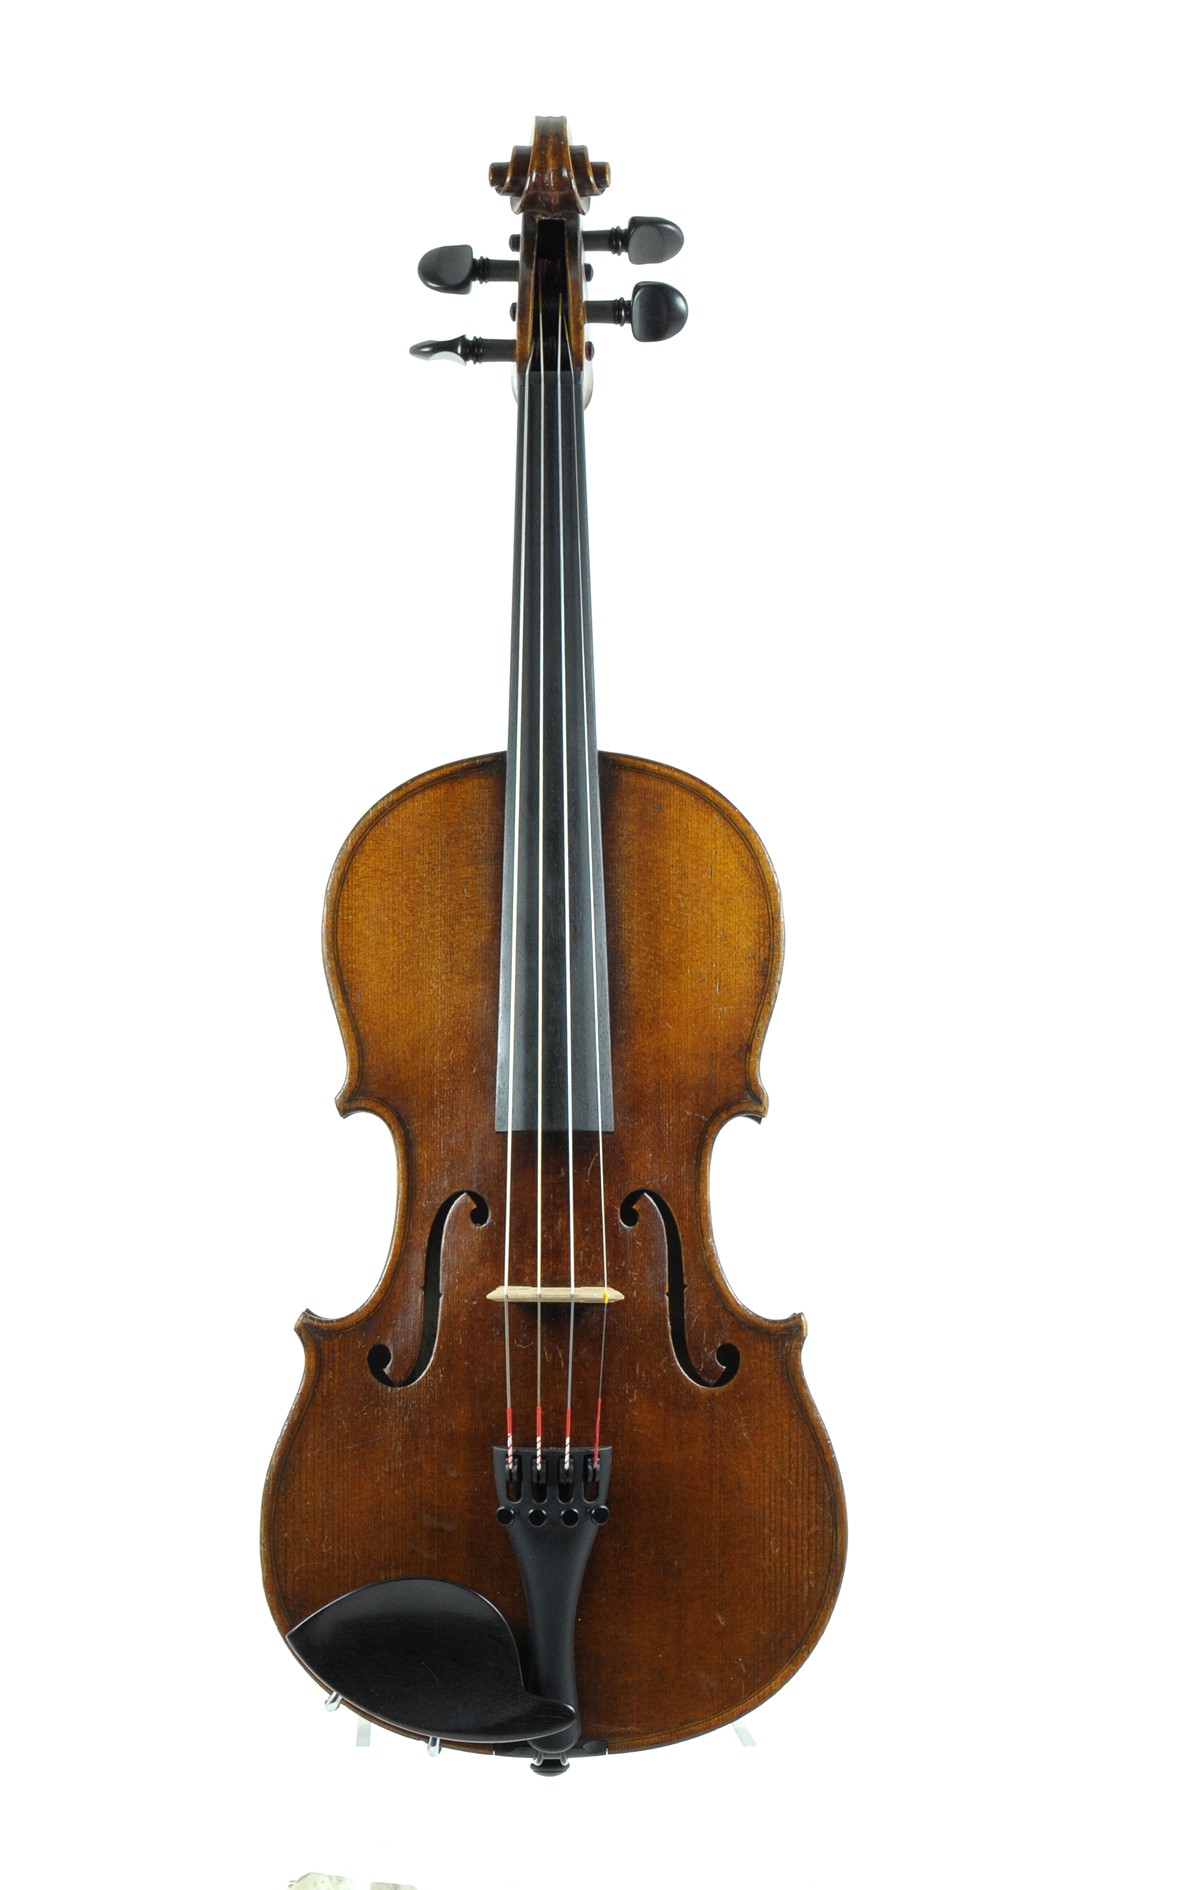 F. A. Meisel, Klingenthal - 3/4 violin, 1896 - table